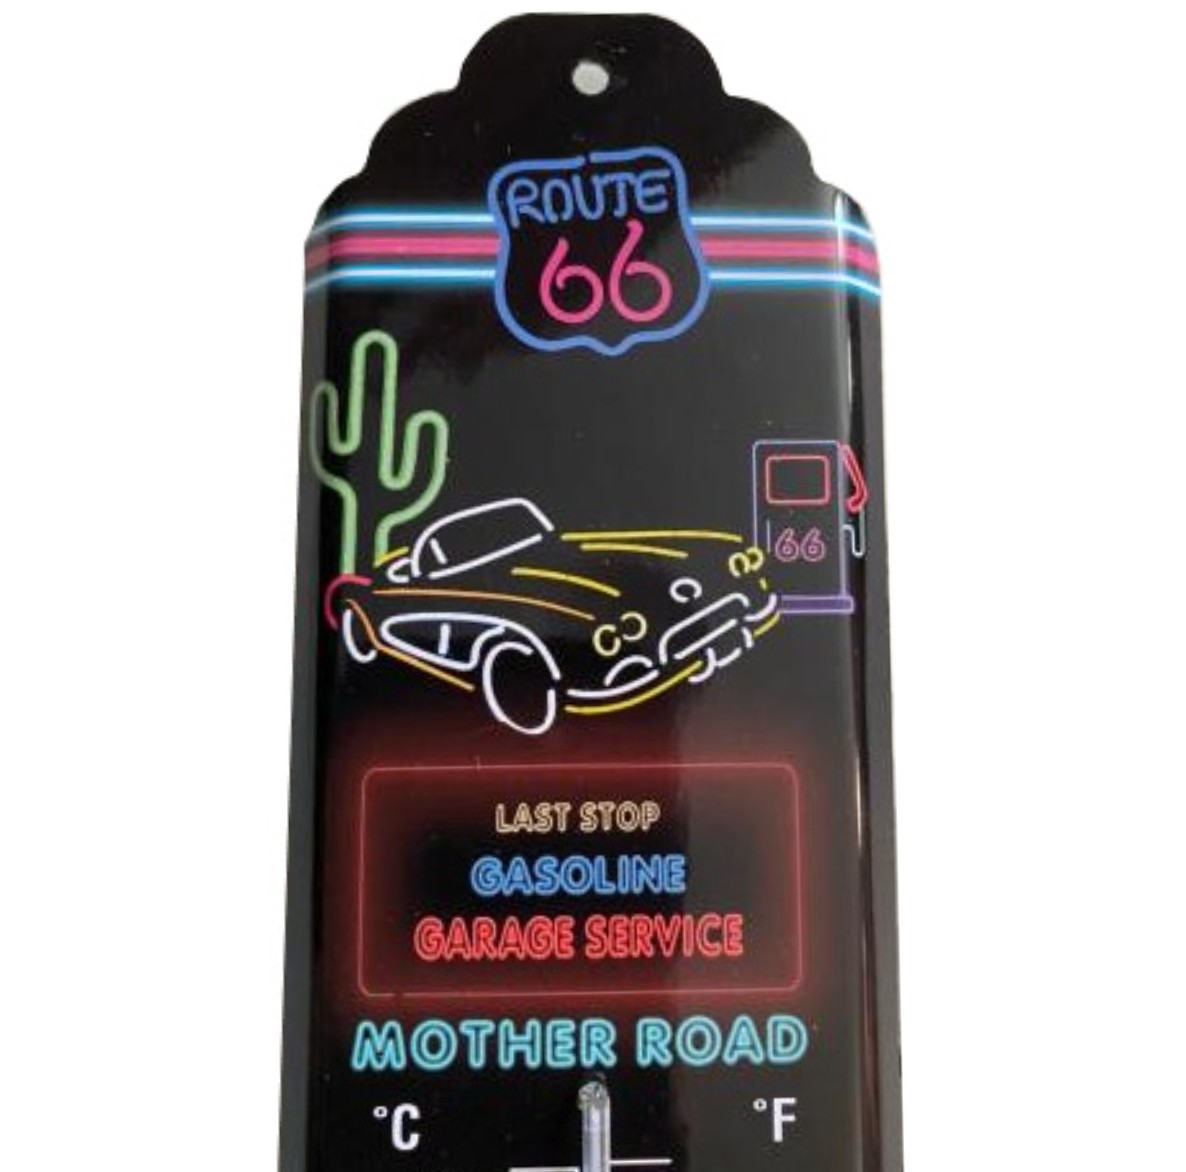 I&amp;S-6610bTHa-Thermometre-mural-décoration-legend-car-mercedes-legend-Route-66-neon-retro-vintage